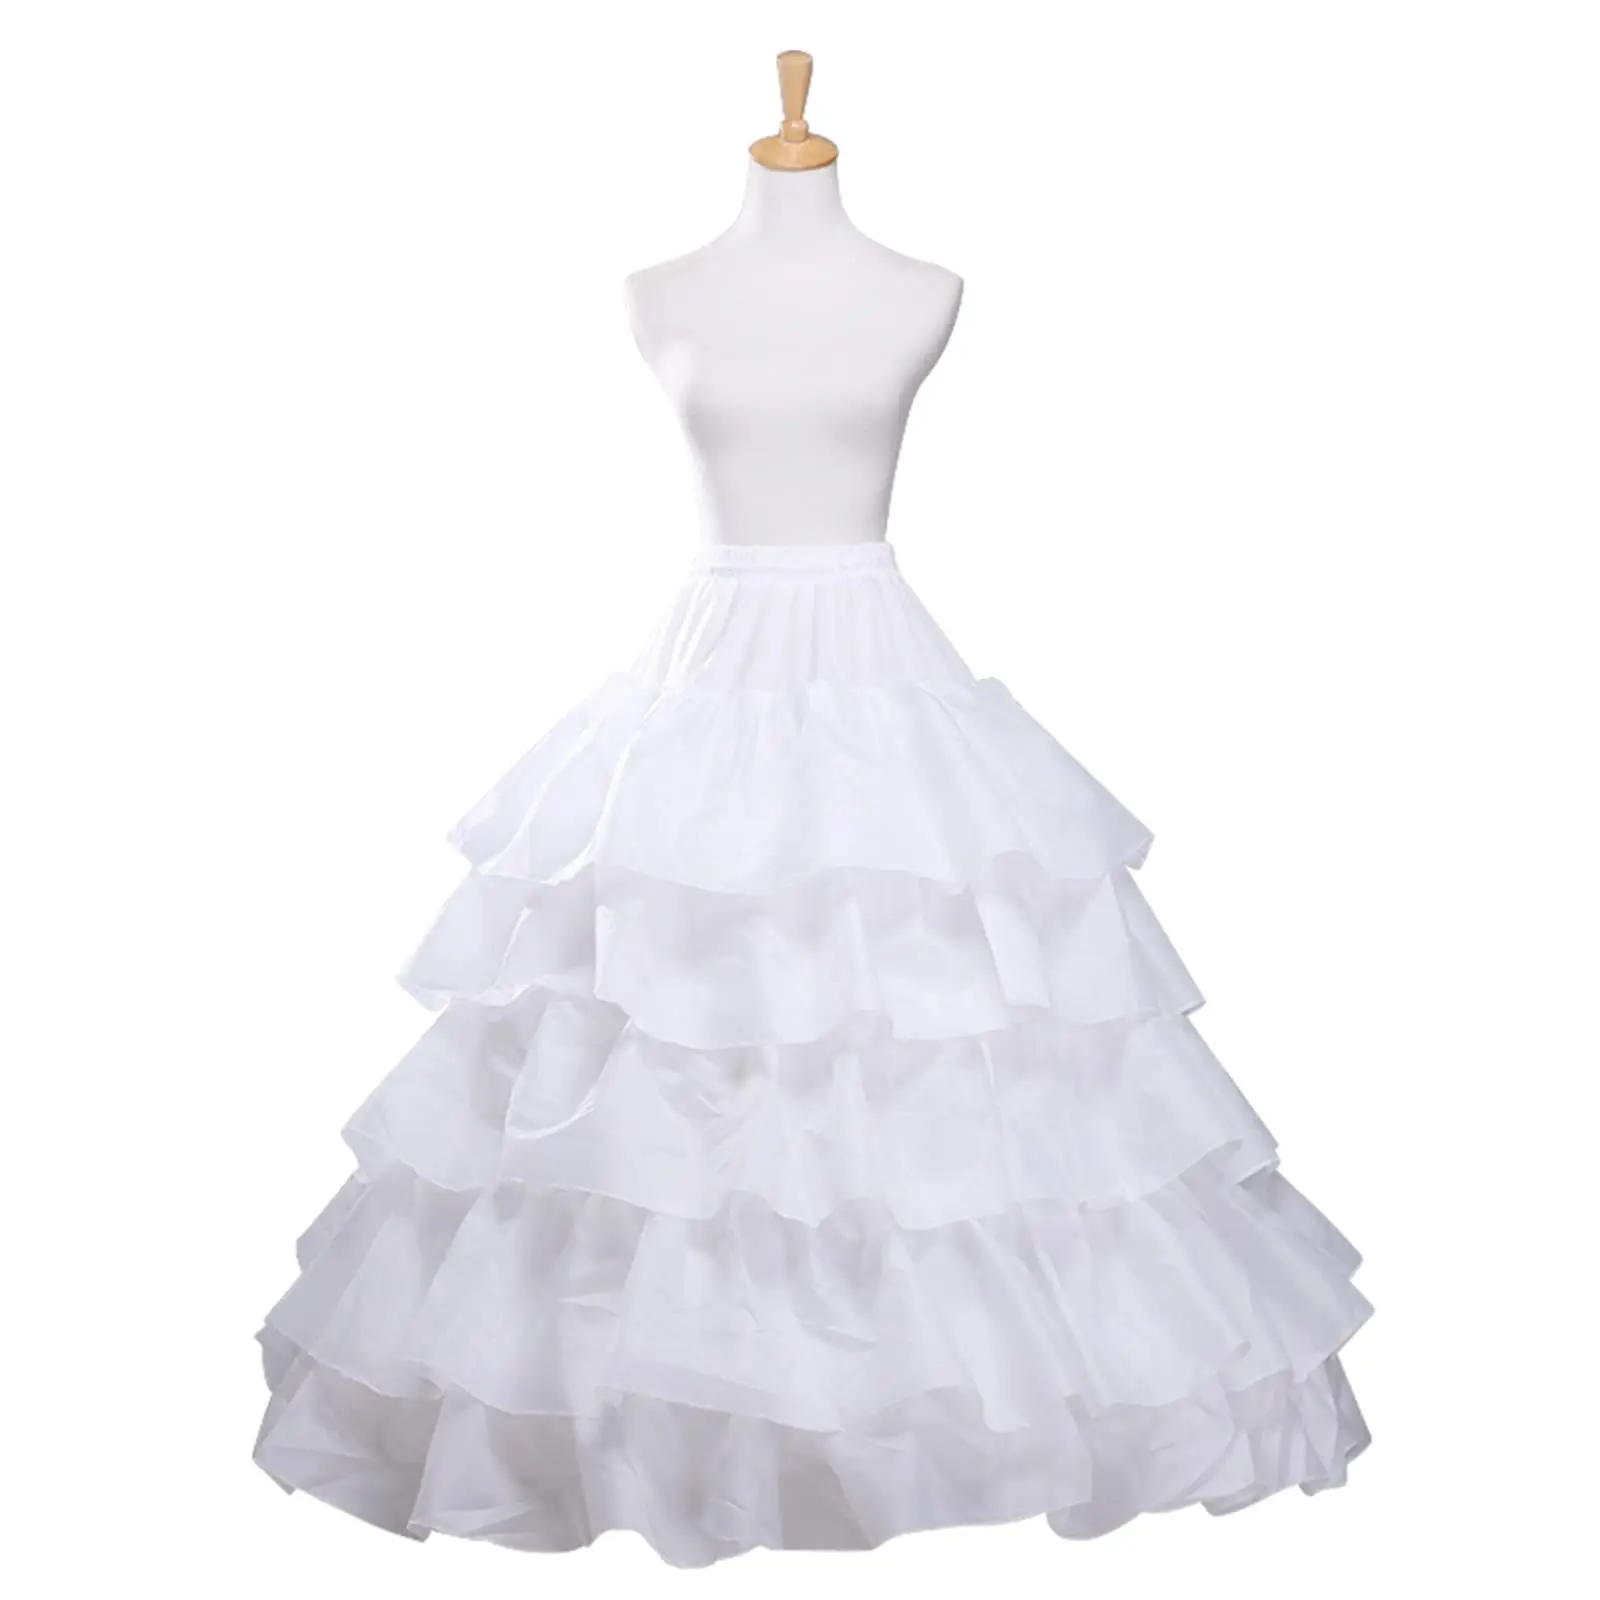 

Crinoline Petticoat 6 Hoop Ball Gown Skirt Slips Long Underskirt for Wedding Bridal Dress